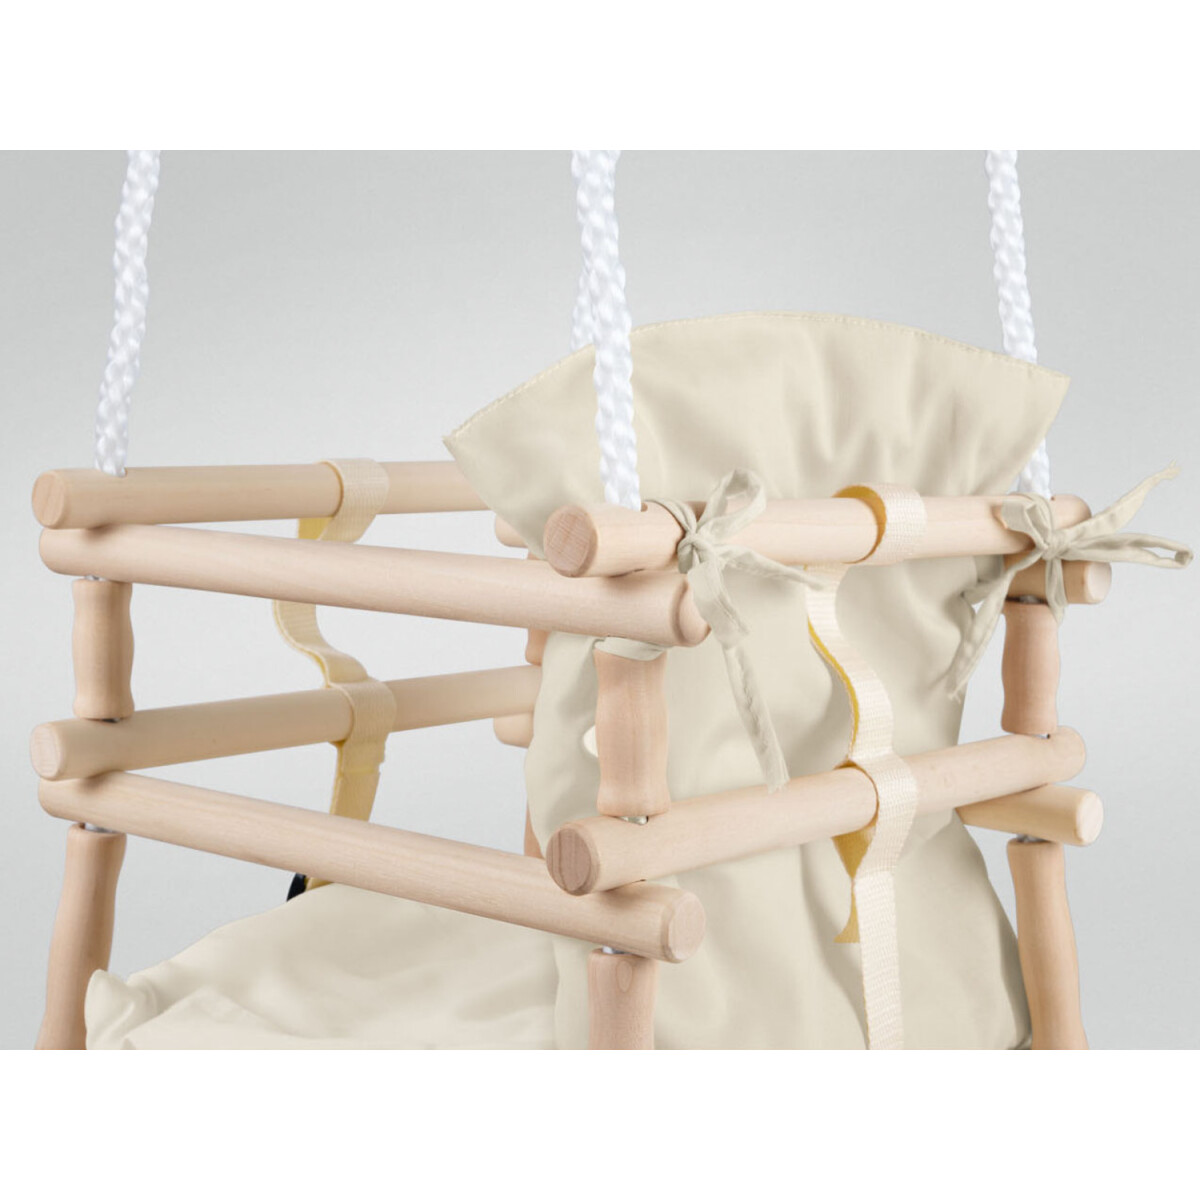 Playtive Baby Holzschaukel mit Sicherheitssitz (weiß) - B-Ware neuwertig,  16,99 € | Gartenspielgeräte